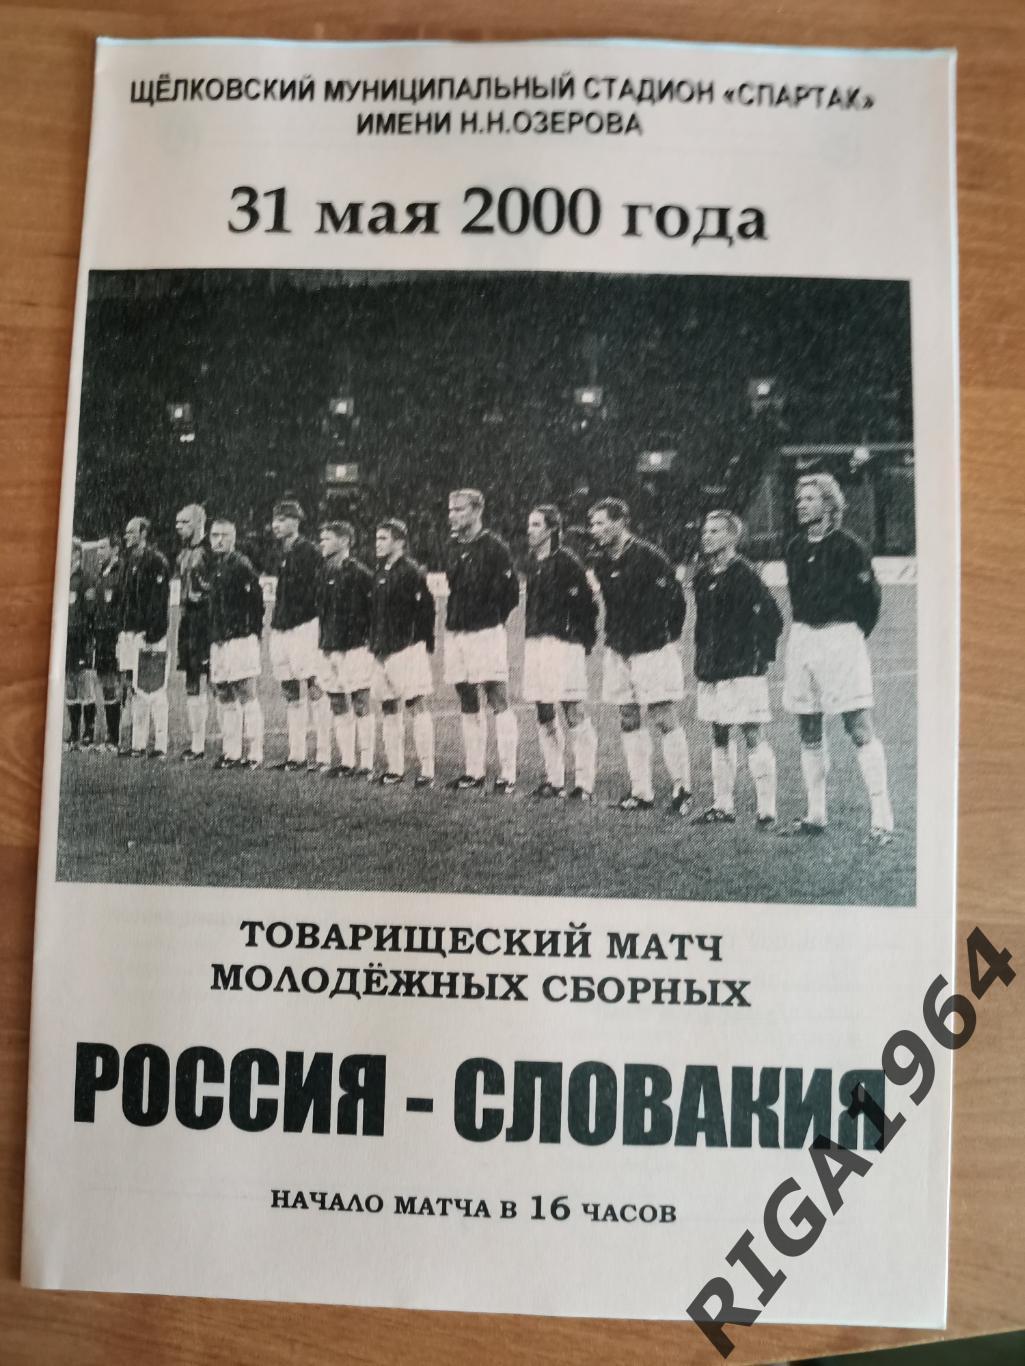 Товарищеский матч Россия U-21-Словакия U-21 (31.05.2000)